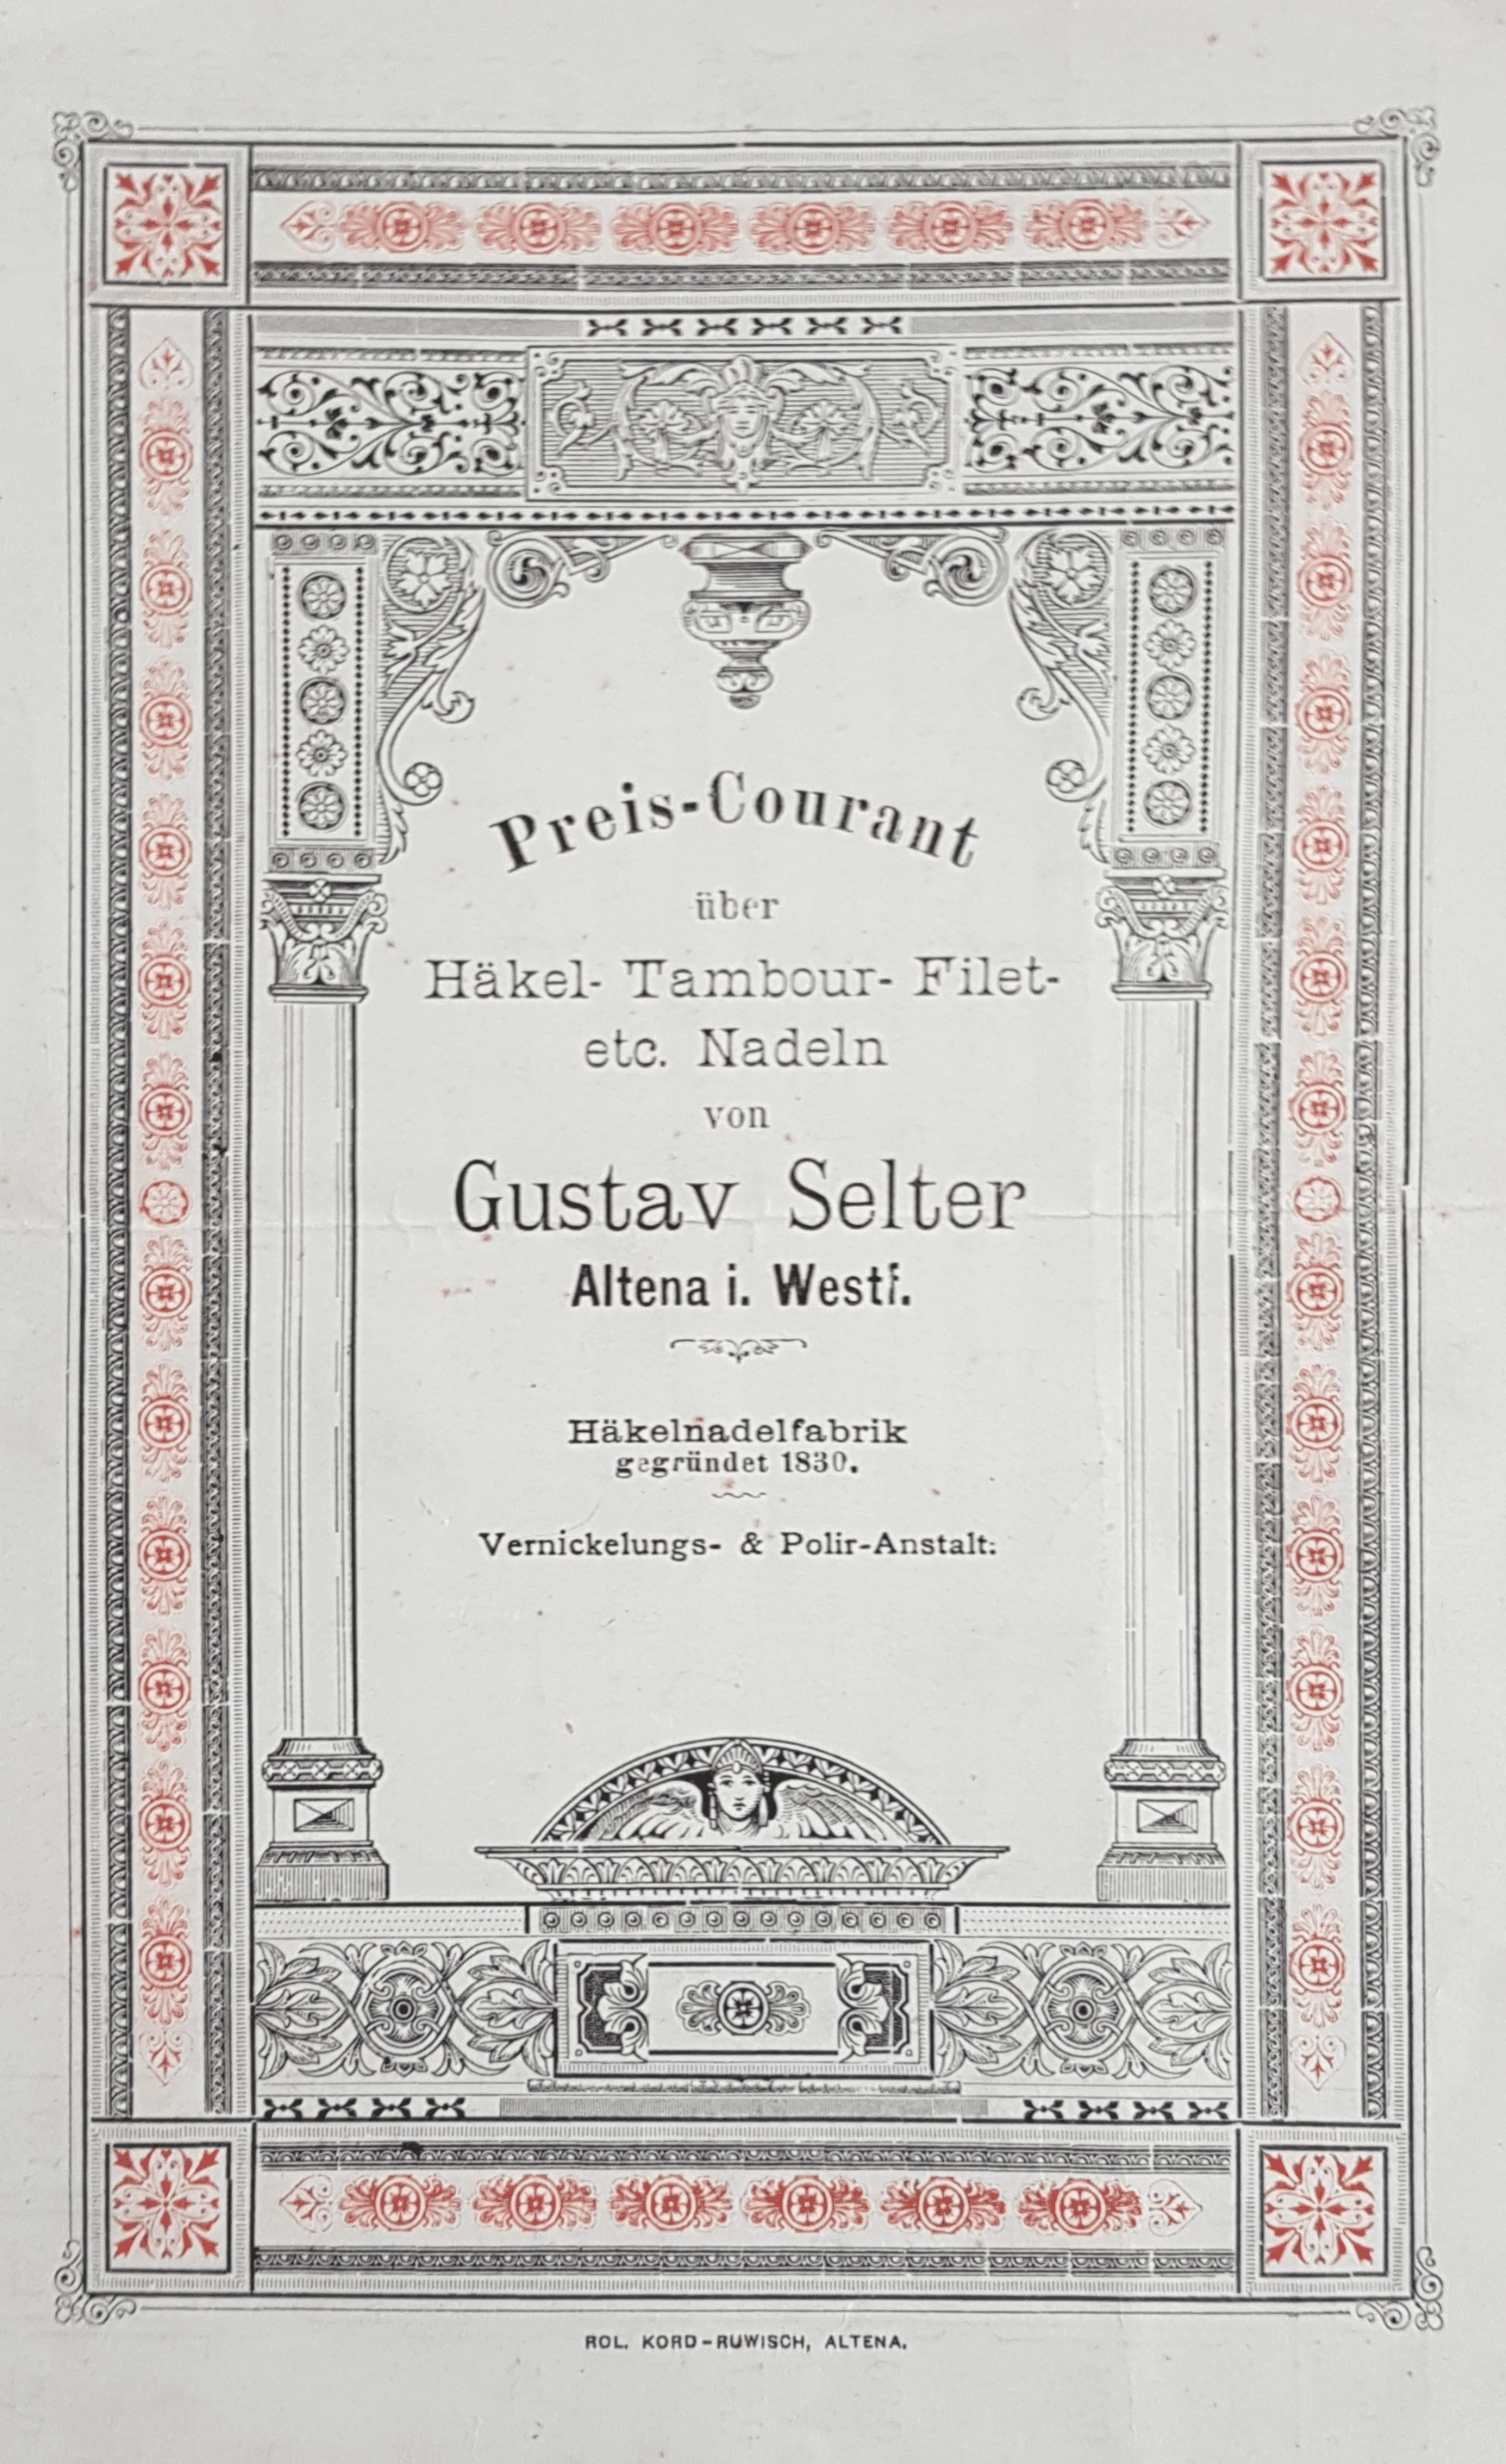 Sortiment der Firma Gustav Selter anfang des 20. Jahrhunderts